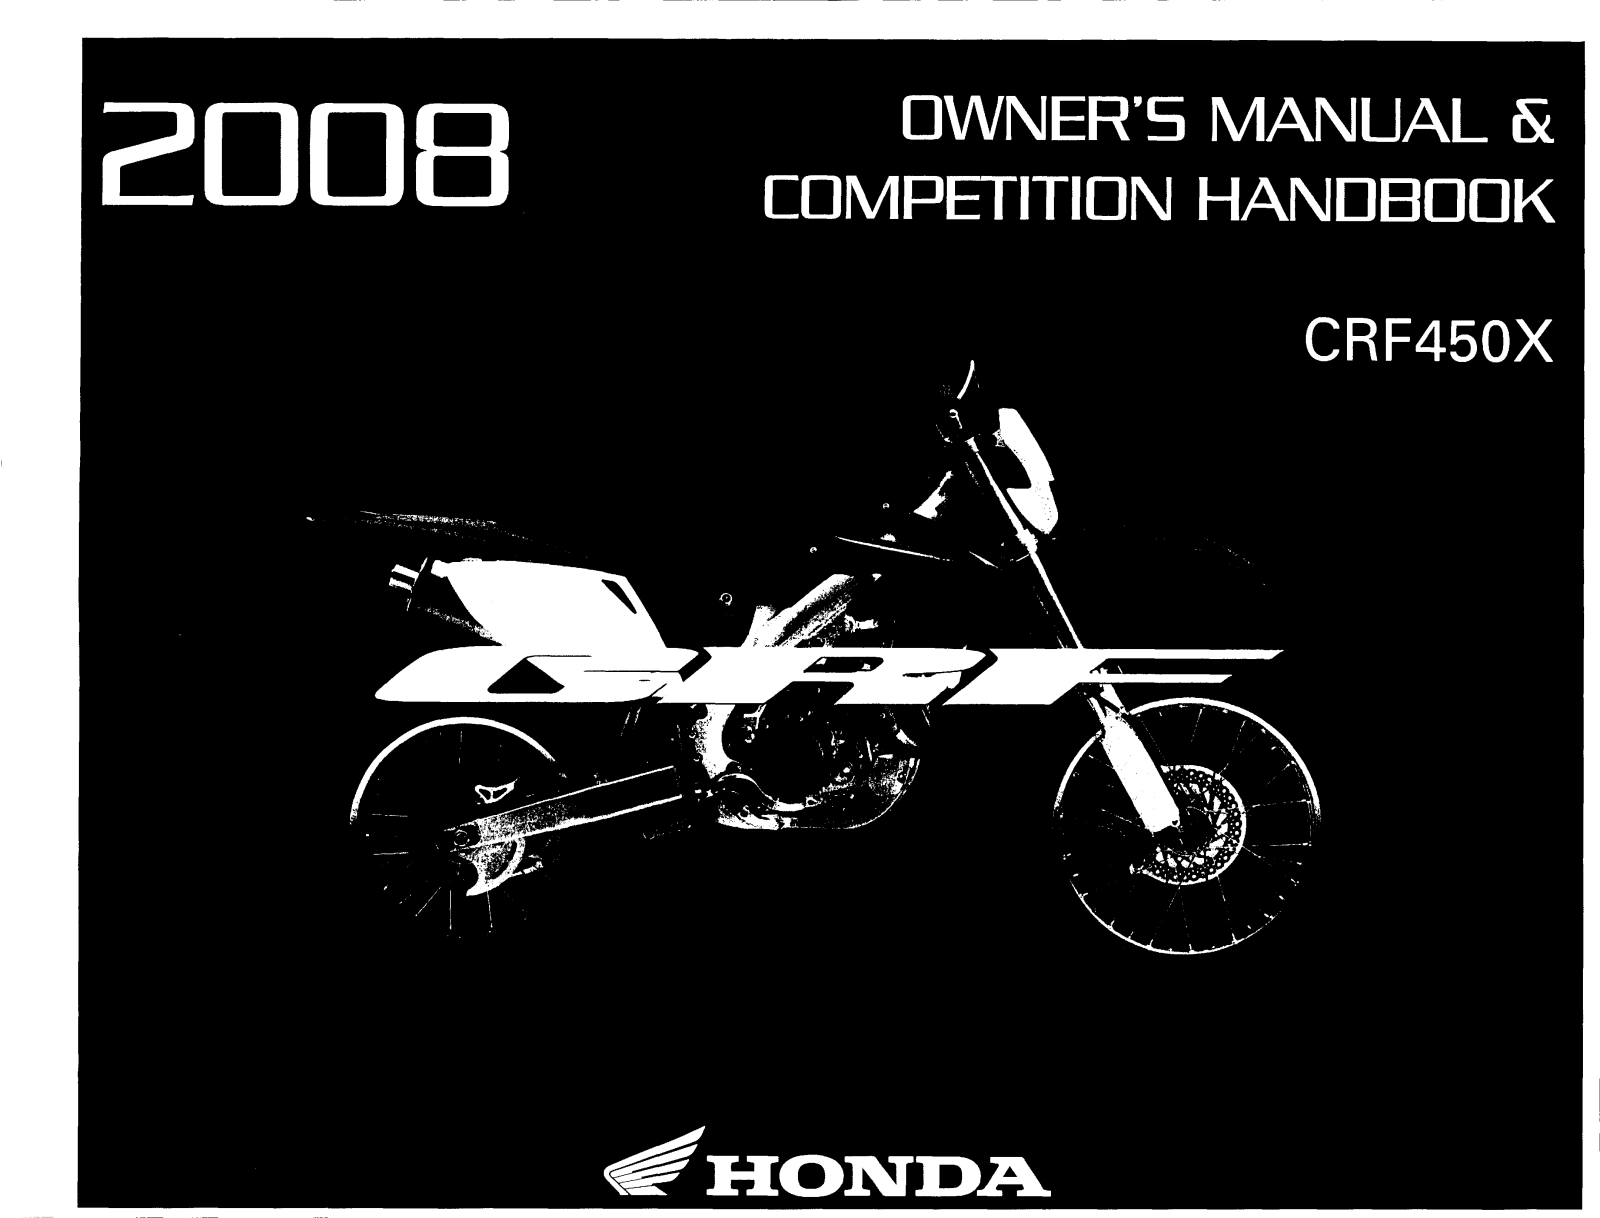 Honda CRF450X Owner's Manual